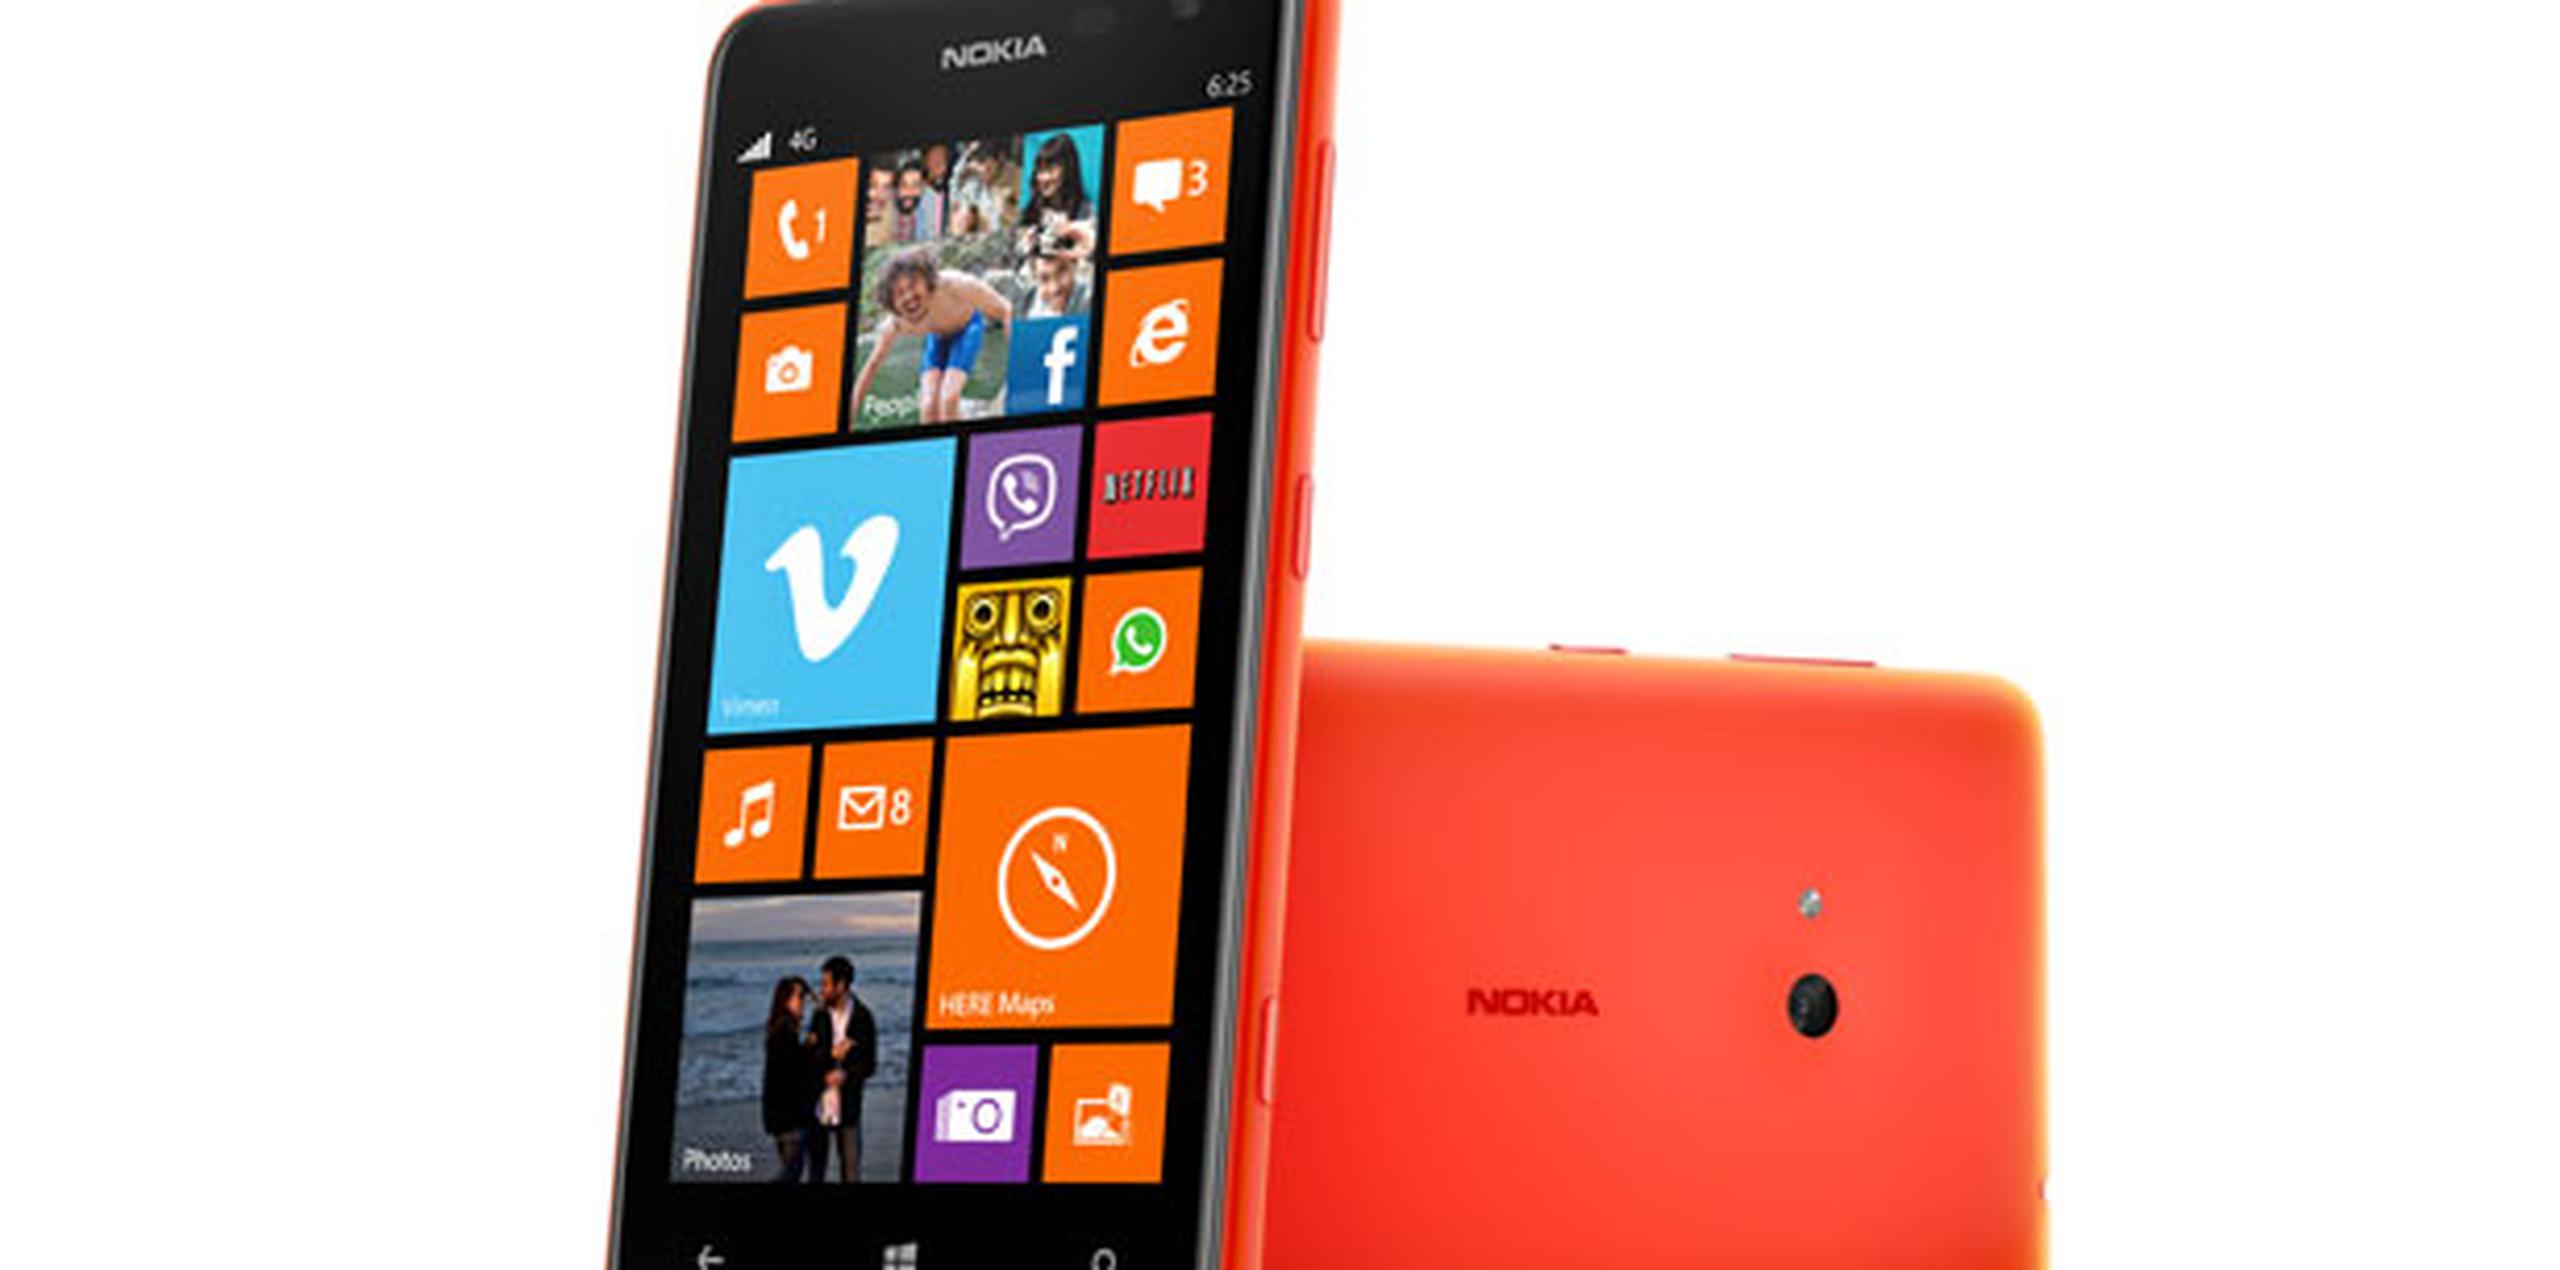 El Nokia Lumia 625 estará mundialmente disponible durante el último trimestre del 2013 y en Puerto Rico podrá adquirirse en exclusiva a través de Claro. (Suministrada)